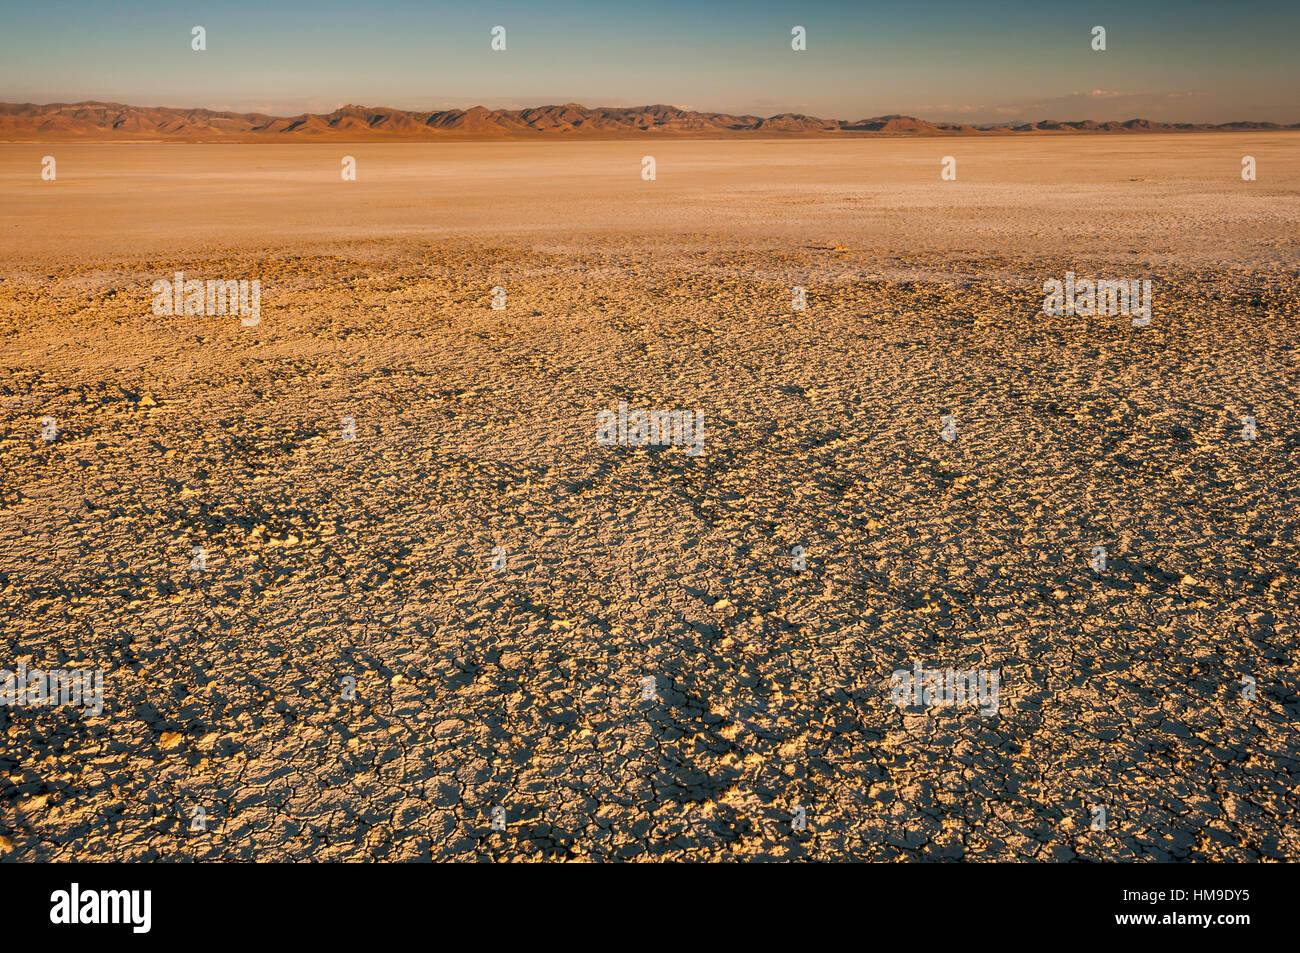 Il sale si deposita sul fondo del lago Sevier, dry lake nel bacino grande deserto dello Utah, Stati Uniti d'America Foto Stock